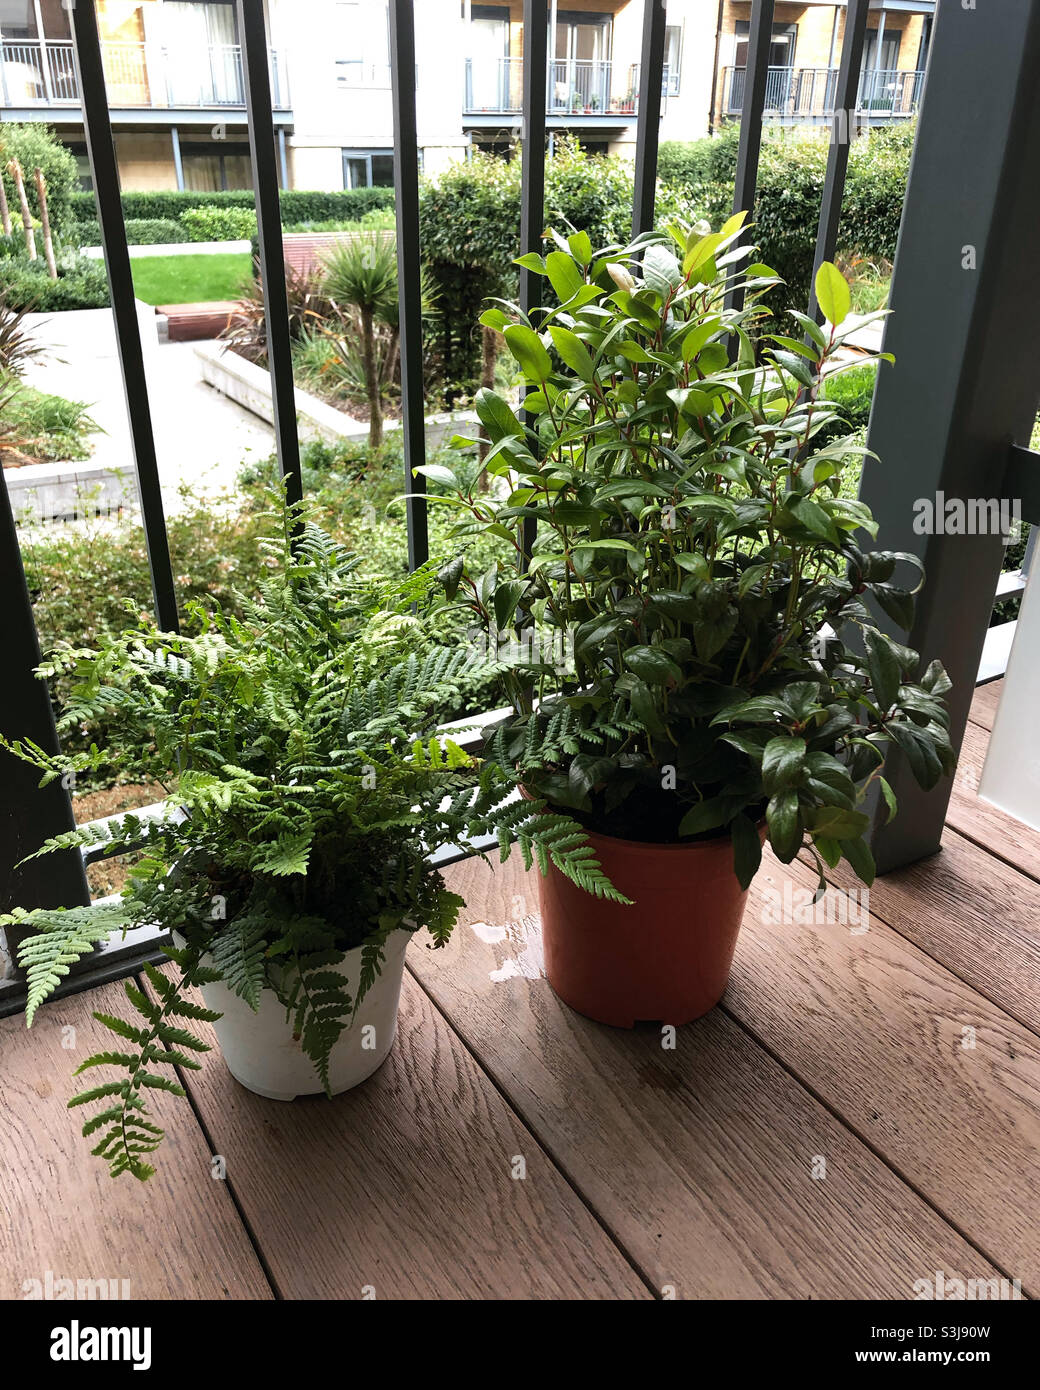 Deux plantes sur un balcon, une est une fougère, une est un zéblide. Vous pouvez voir le jardin intérieur par le balcon. Banque D'Images